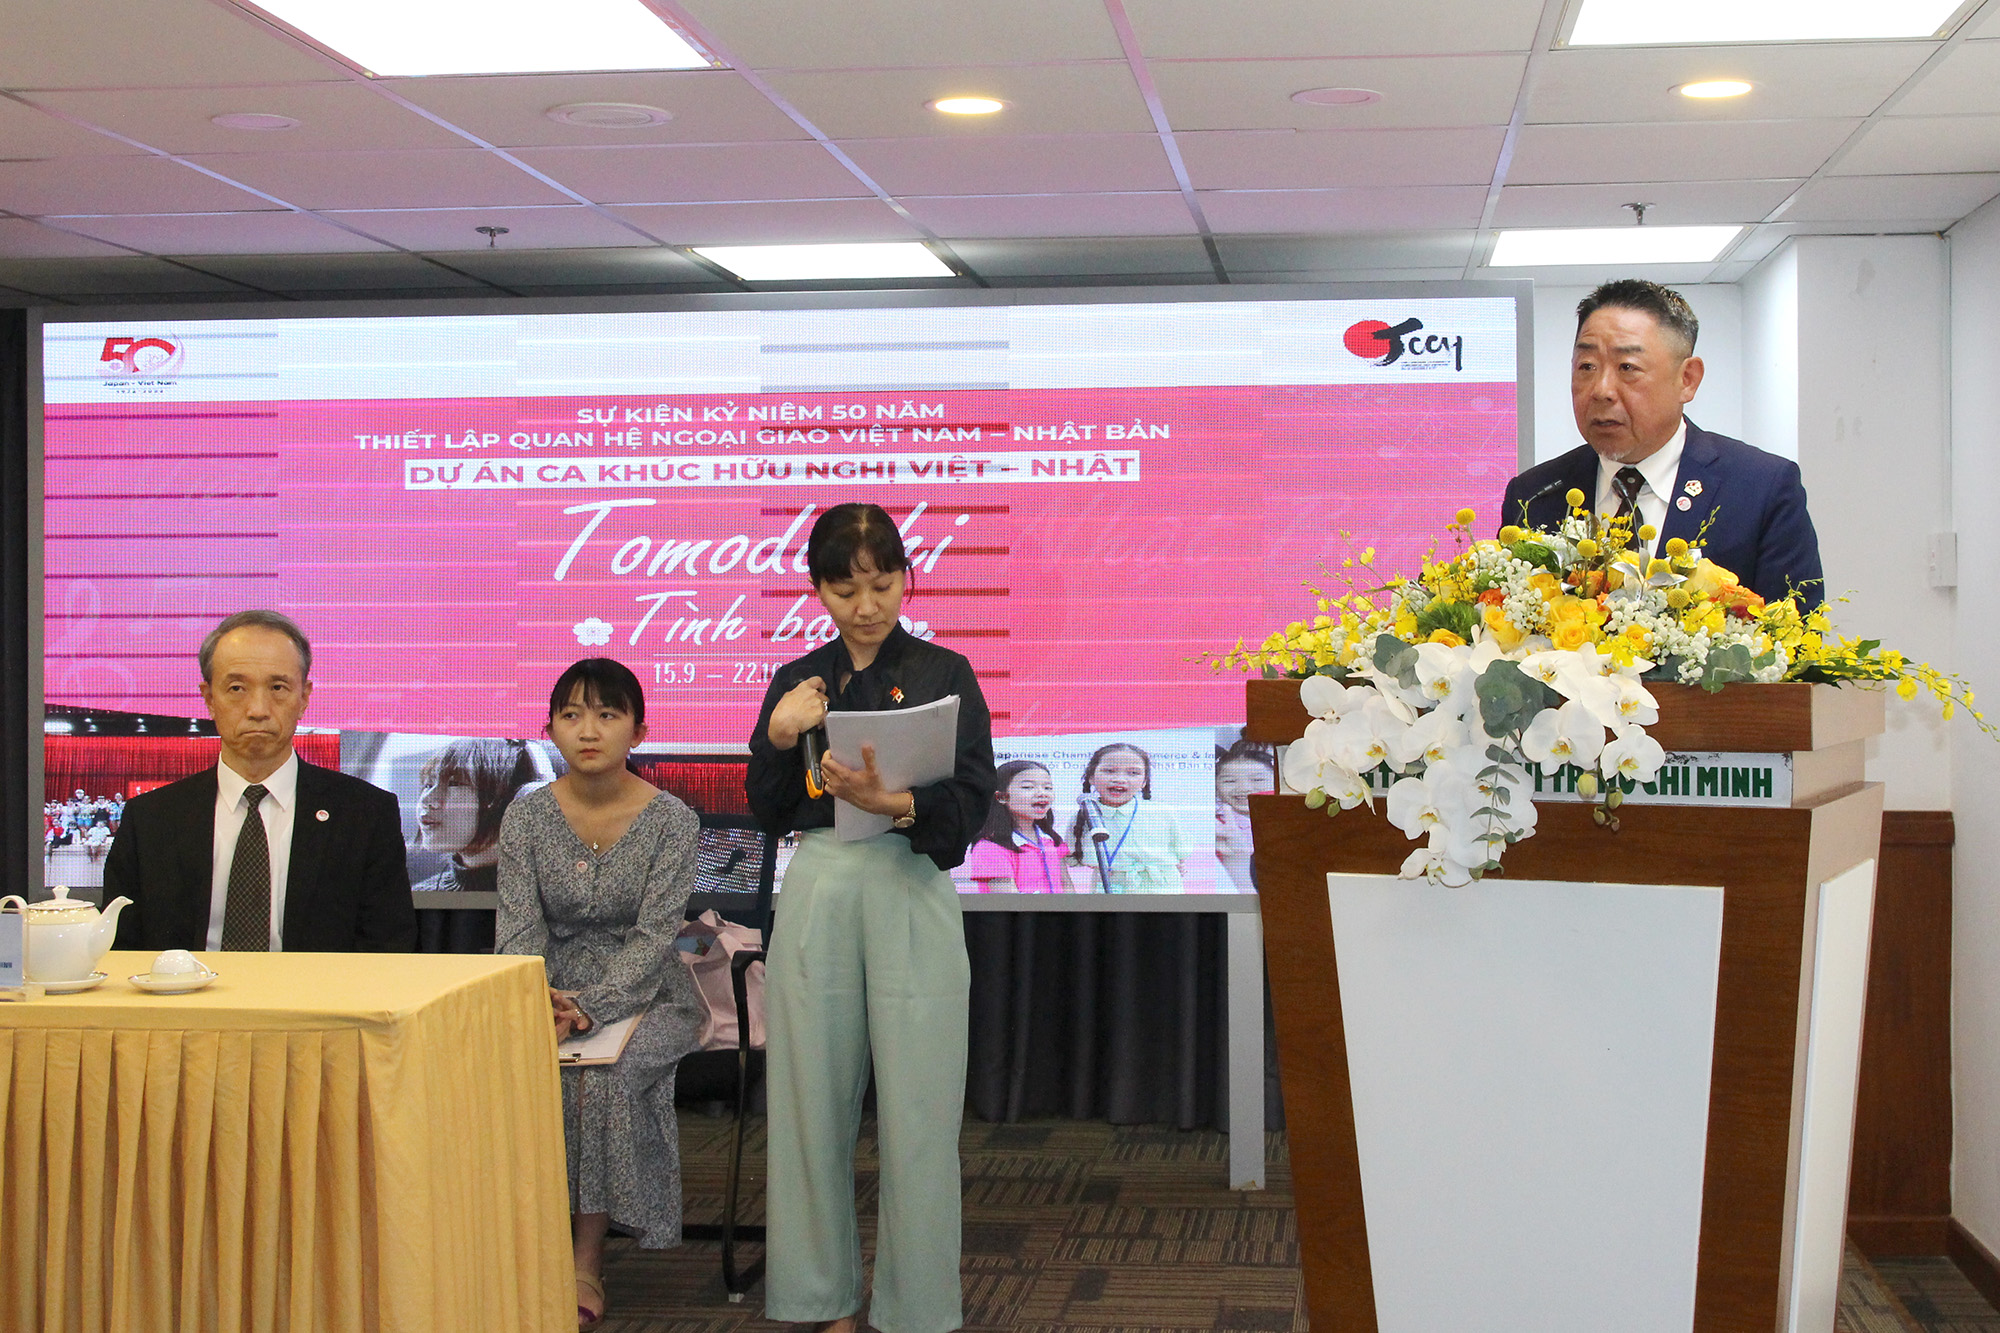 Ông Mizushima Kozo, Chủ tịch Hiệp hội Doanh Nghiệp Nhật Bản tại TP. Hồ Chí Minh (JCCH) – đại diện Ban Tổ chức phát biểu tại buổi họp báo (Ảnh: H.H).